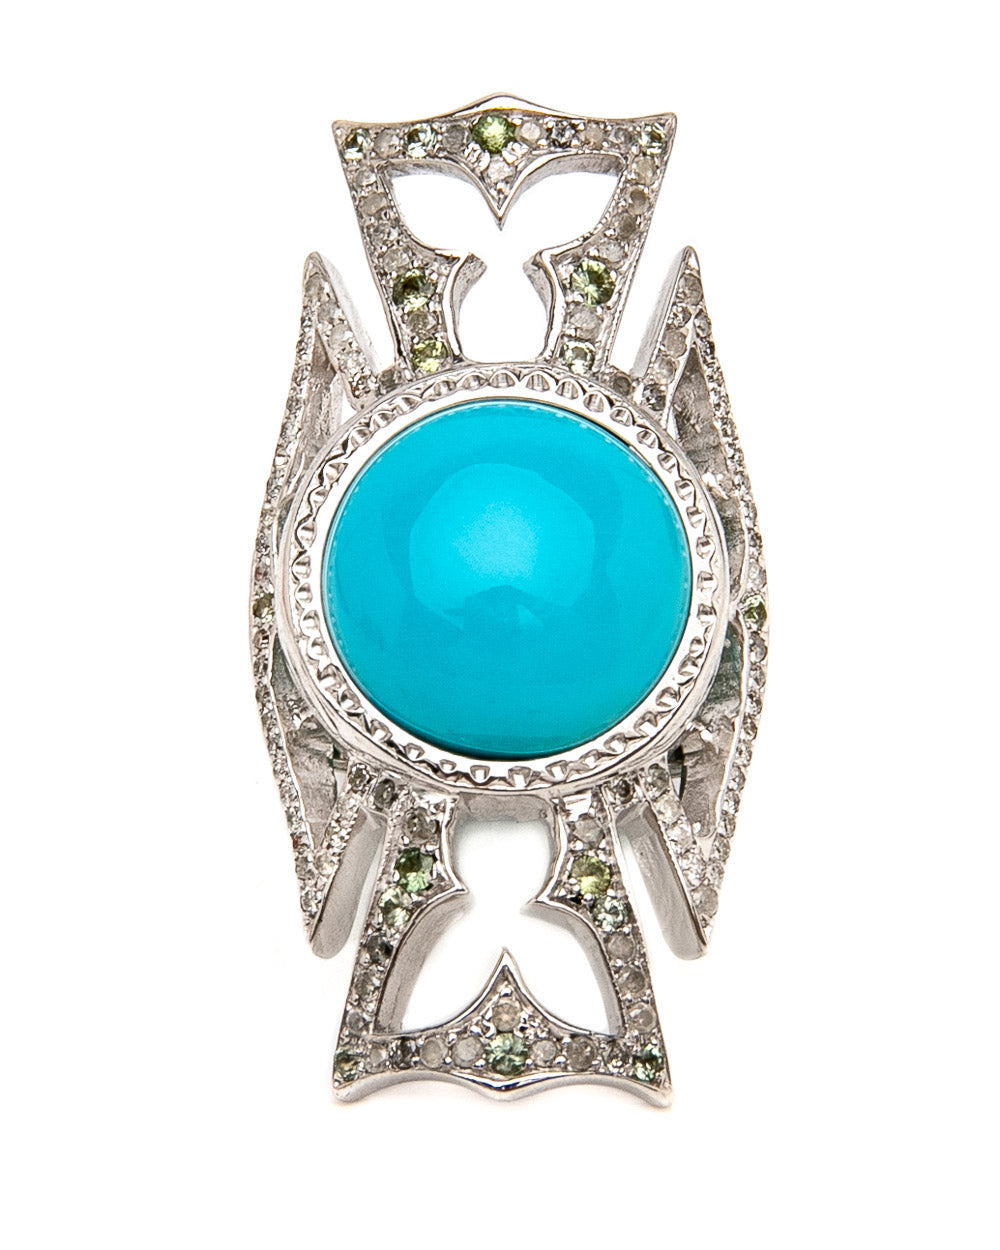 Maltese Cross Turquoise Ring